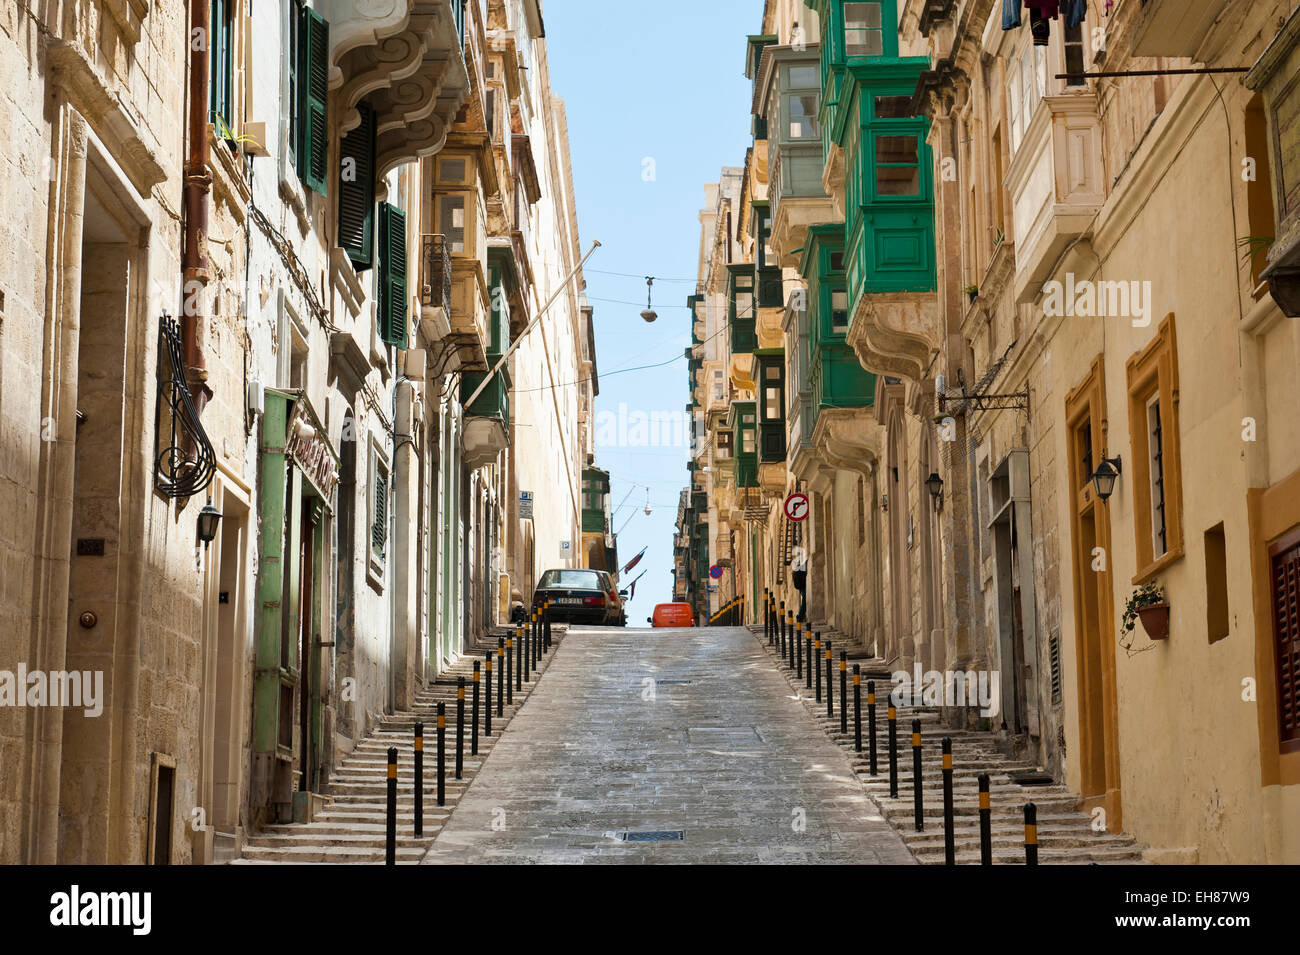 Rue typique, canyon urbain, route menant tout droit vers le centre historique, La Valette, Malte Banque D'Images